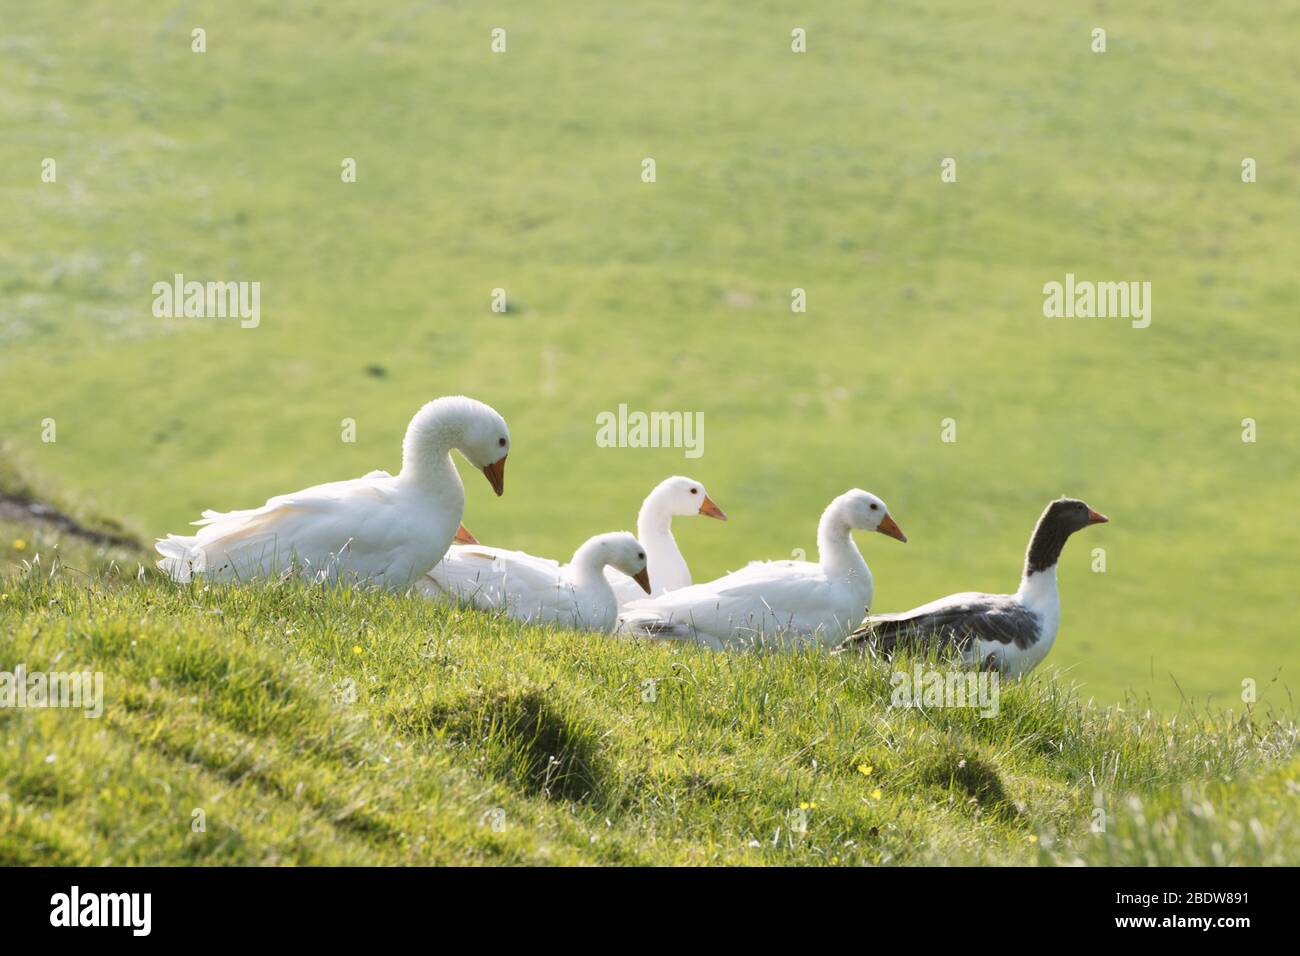 Oies domestiques blanches et grises dans l'herbe verte. Îles Féroé, Danemark Banque D'Images